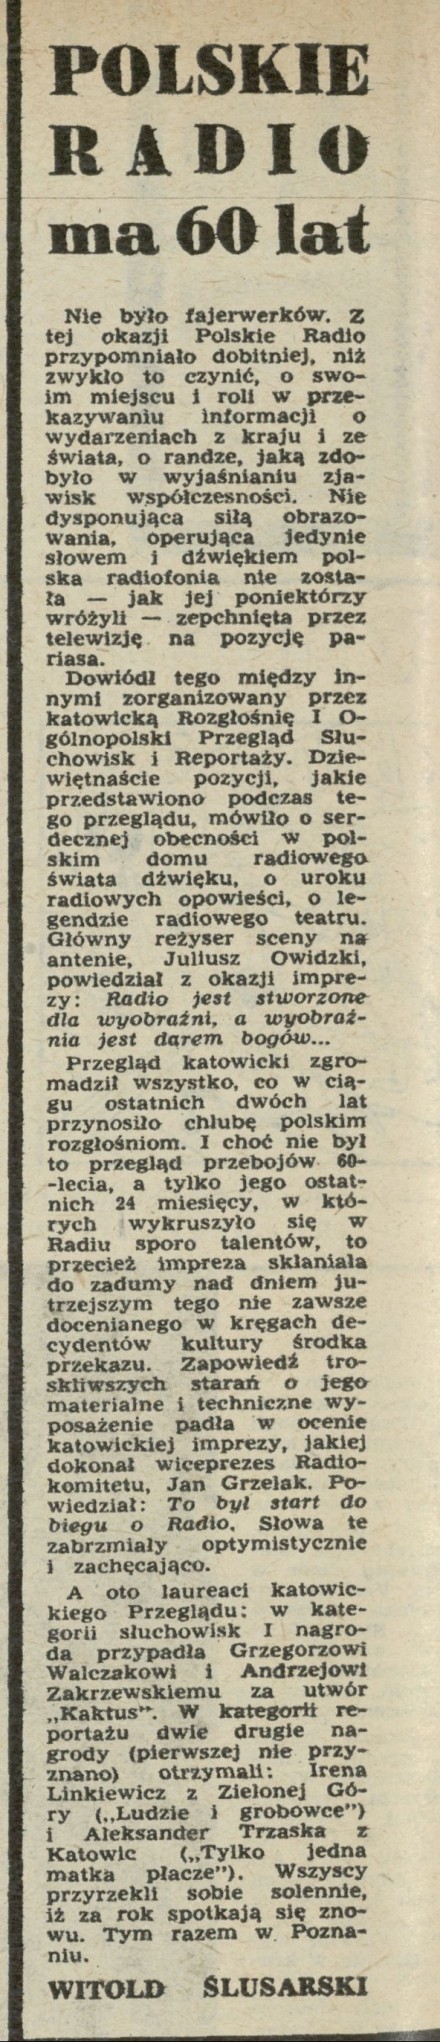 Polskie radio ma 60 lat